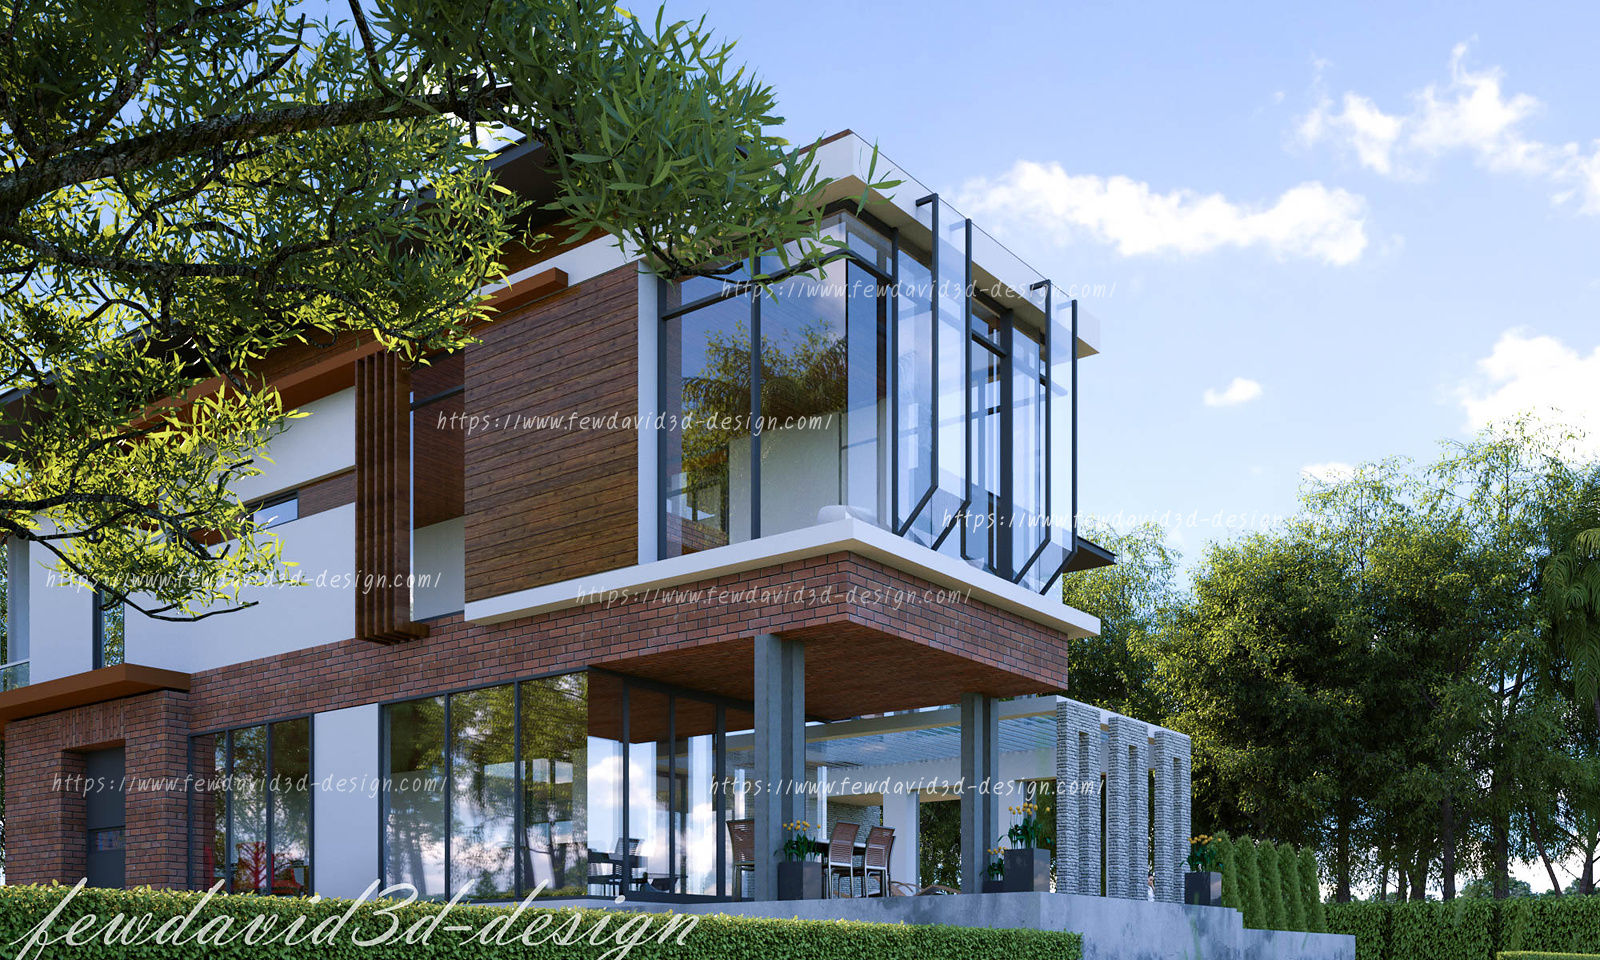 บ้านพักอาศัย 2ชั้น คุณ วีรยุทธฯ อ.แก่งกระจาน จ.เพชรบุรี, fewdavid3d-design fewdavid3d-design Дома на одну семью